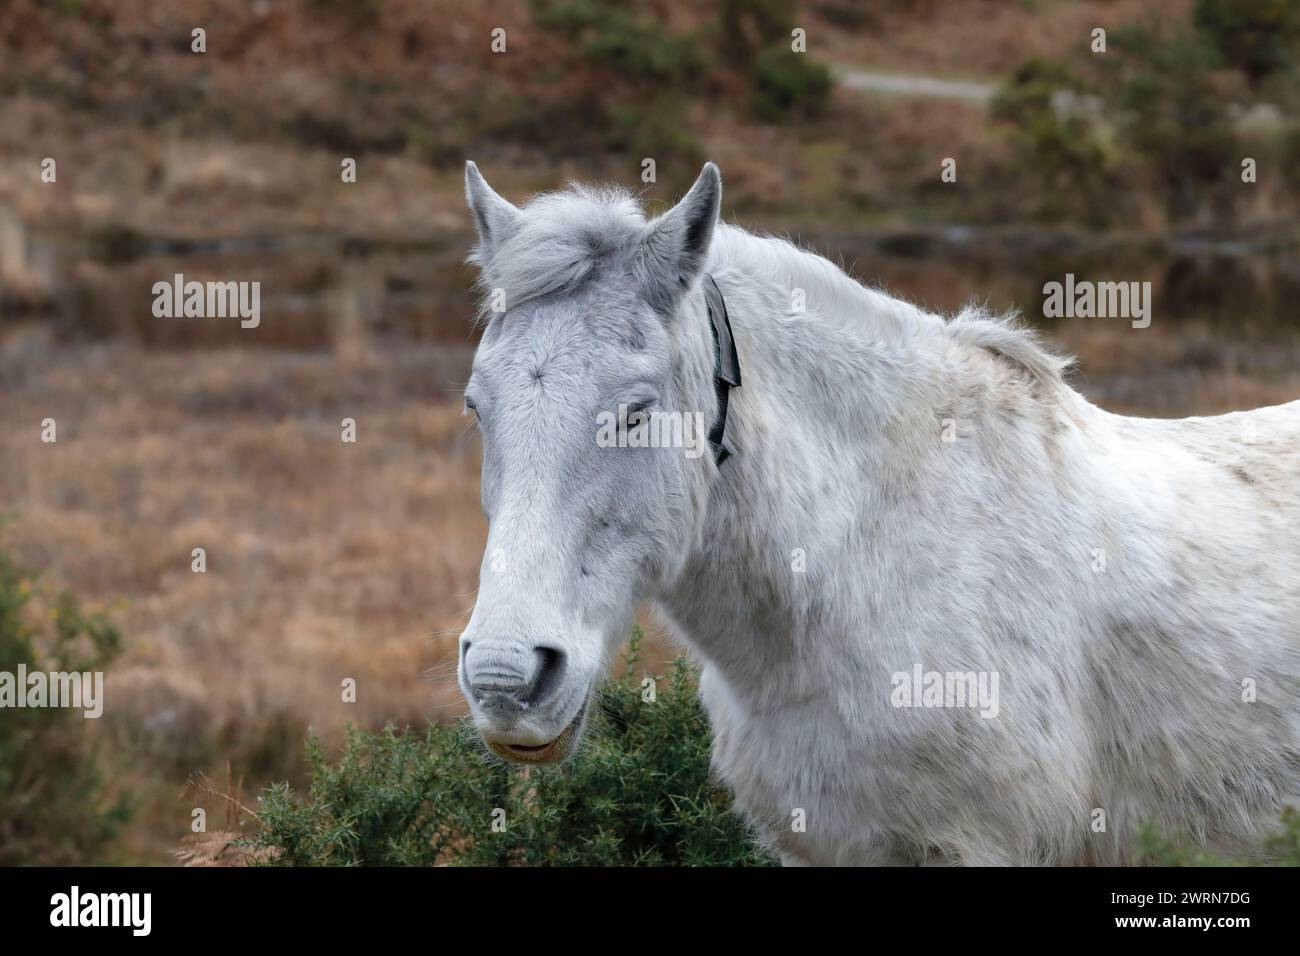 Foto della testa di un pony bianco della New Forest sulla brughiera, rivolto verso sinistra, con le gorse e l'erica sullo sfondo. Foto Stock